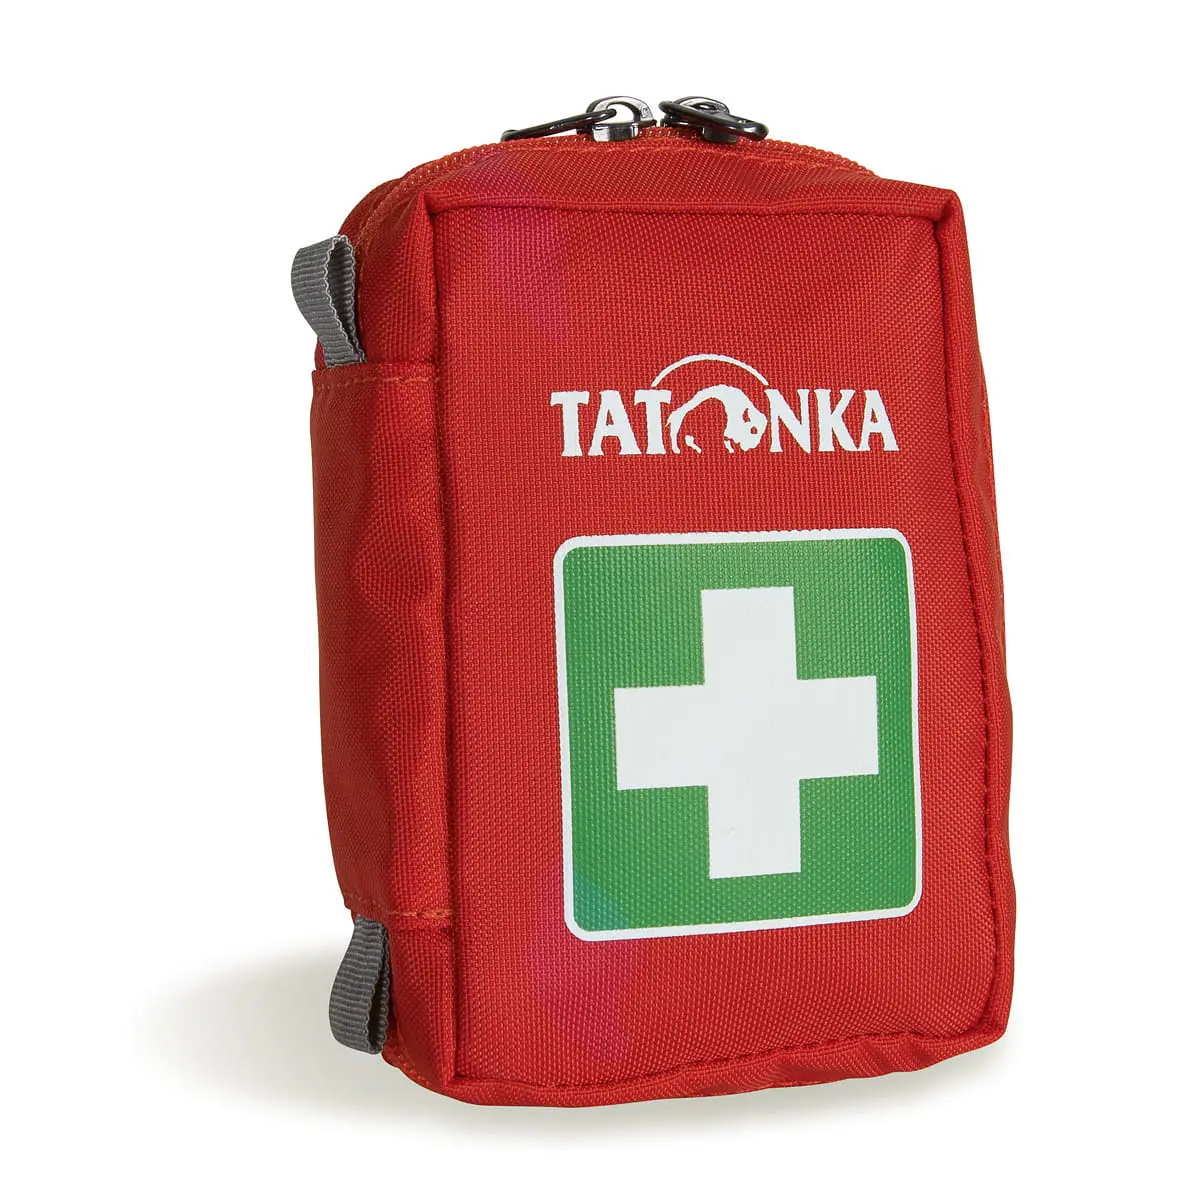 https://www.mbs-medizintechnik.com/media/6a/ae/b8/1701289933/tatonka-first-aid-xs.webp